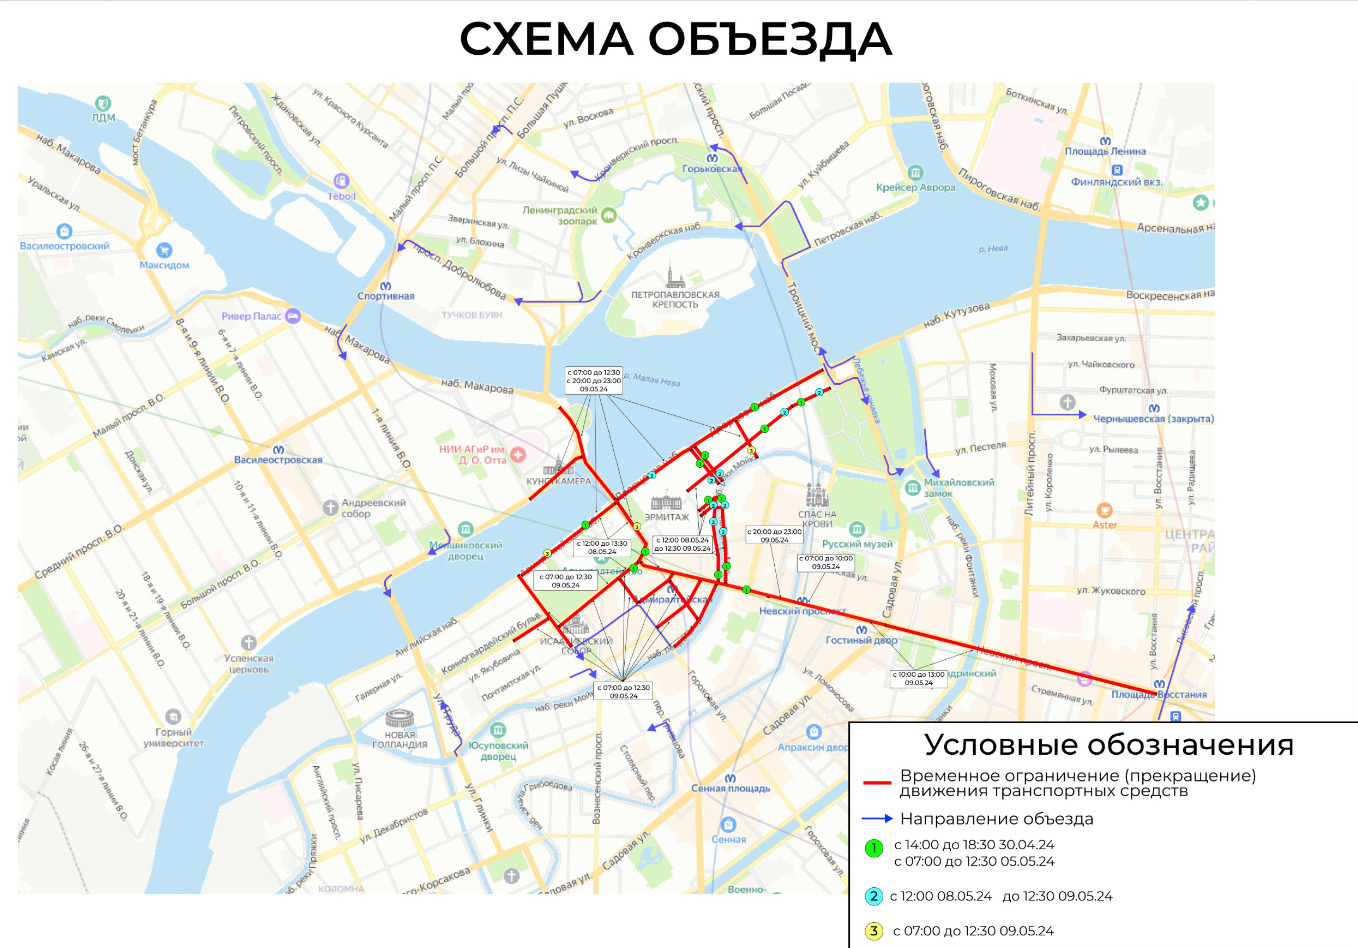 Для парада на 9 мая улицы в центре Петербурга будут перекрывать два дня